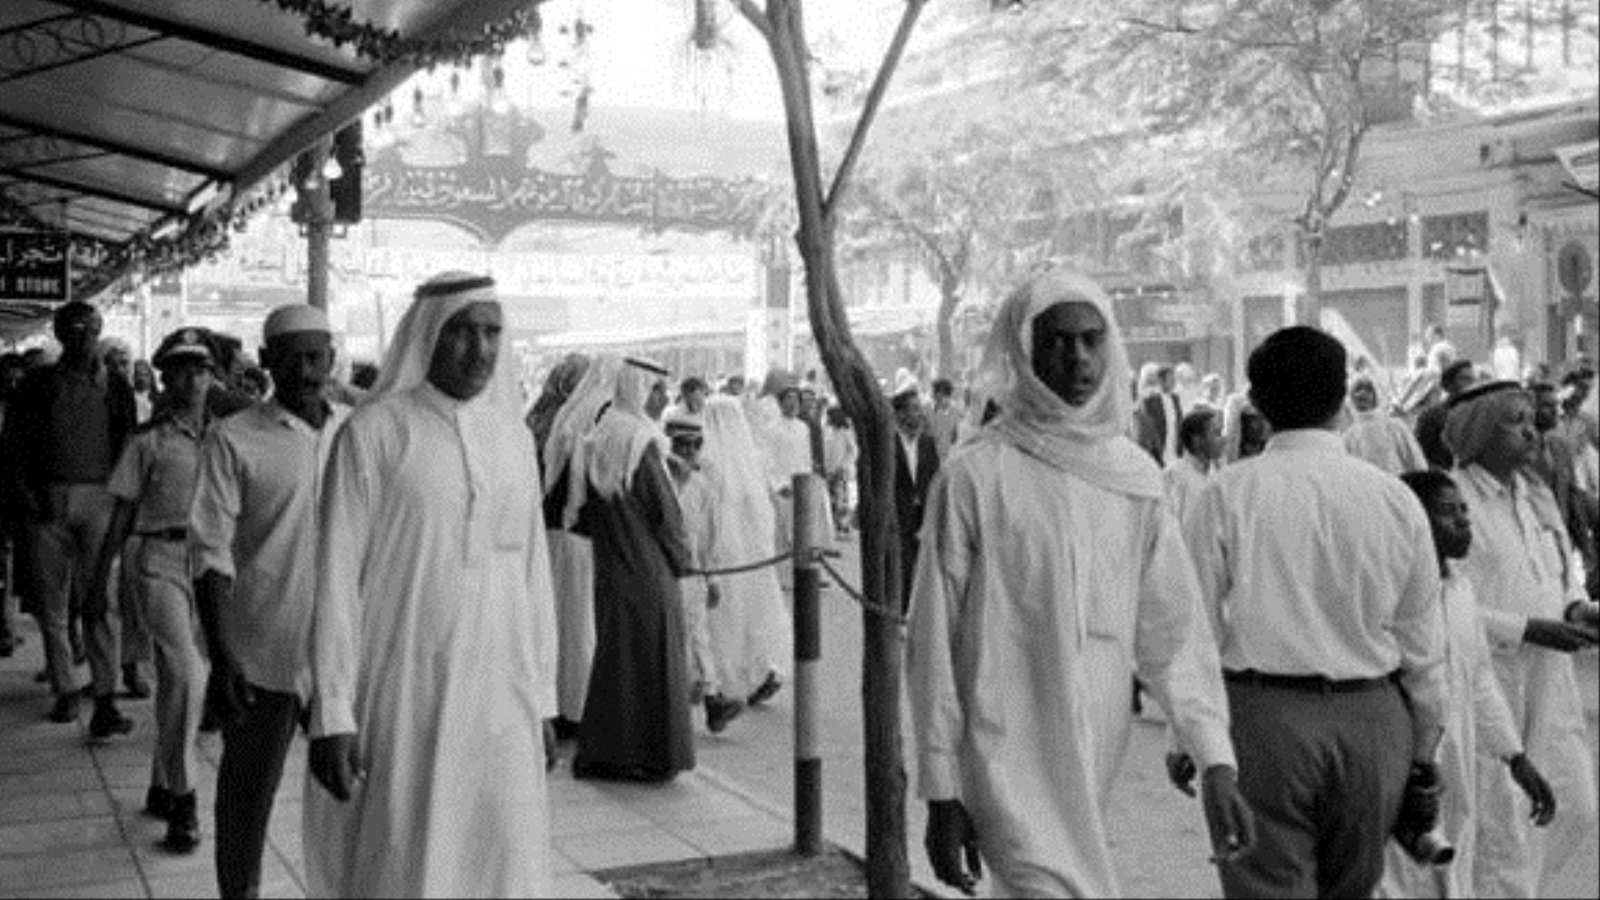 كانت سياسات الدولة الريعيّة السعوديّة ليس فقط المُكرّس الأول للتخلف الاجتماعي وأمراض المجتمع المستعصية، بل ومن أمدته بأساسات اقتصاديّة وقيميّة متينة.